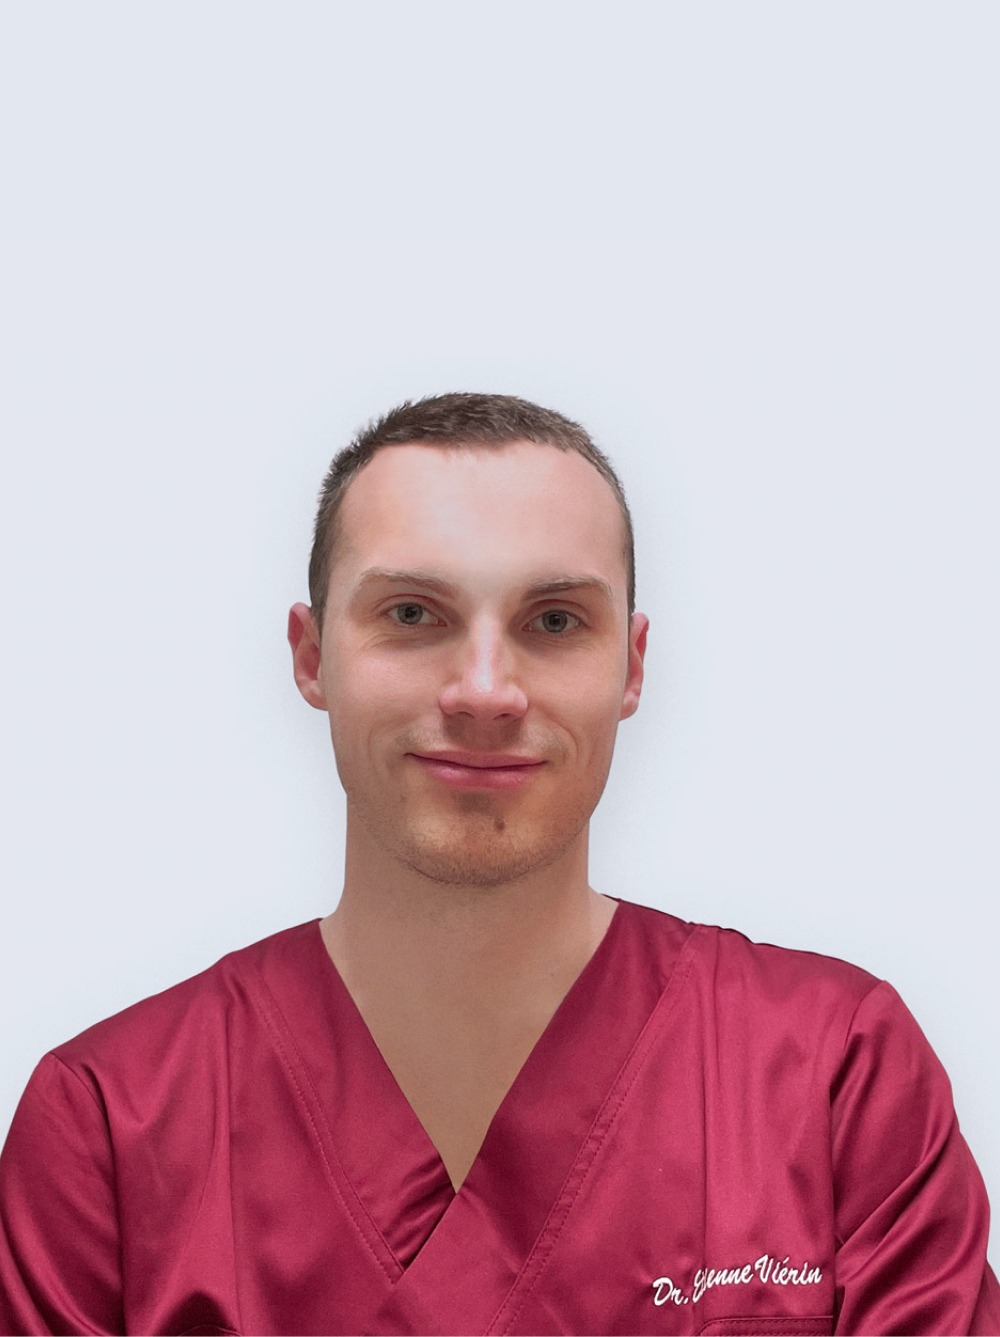 Membro del team, nome Dr. Etienne Viérin, ruolo Dentista